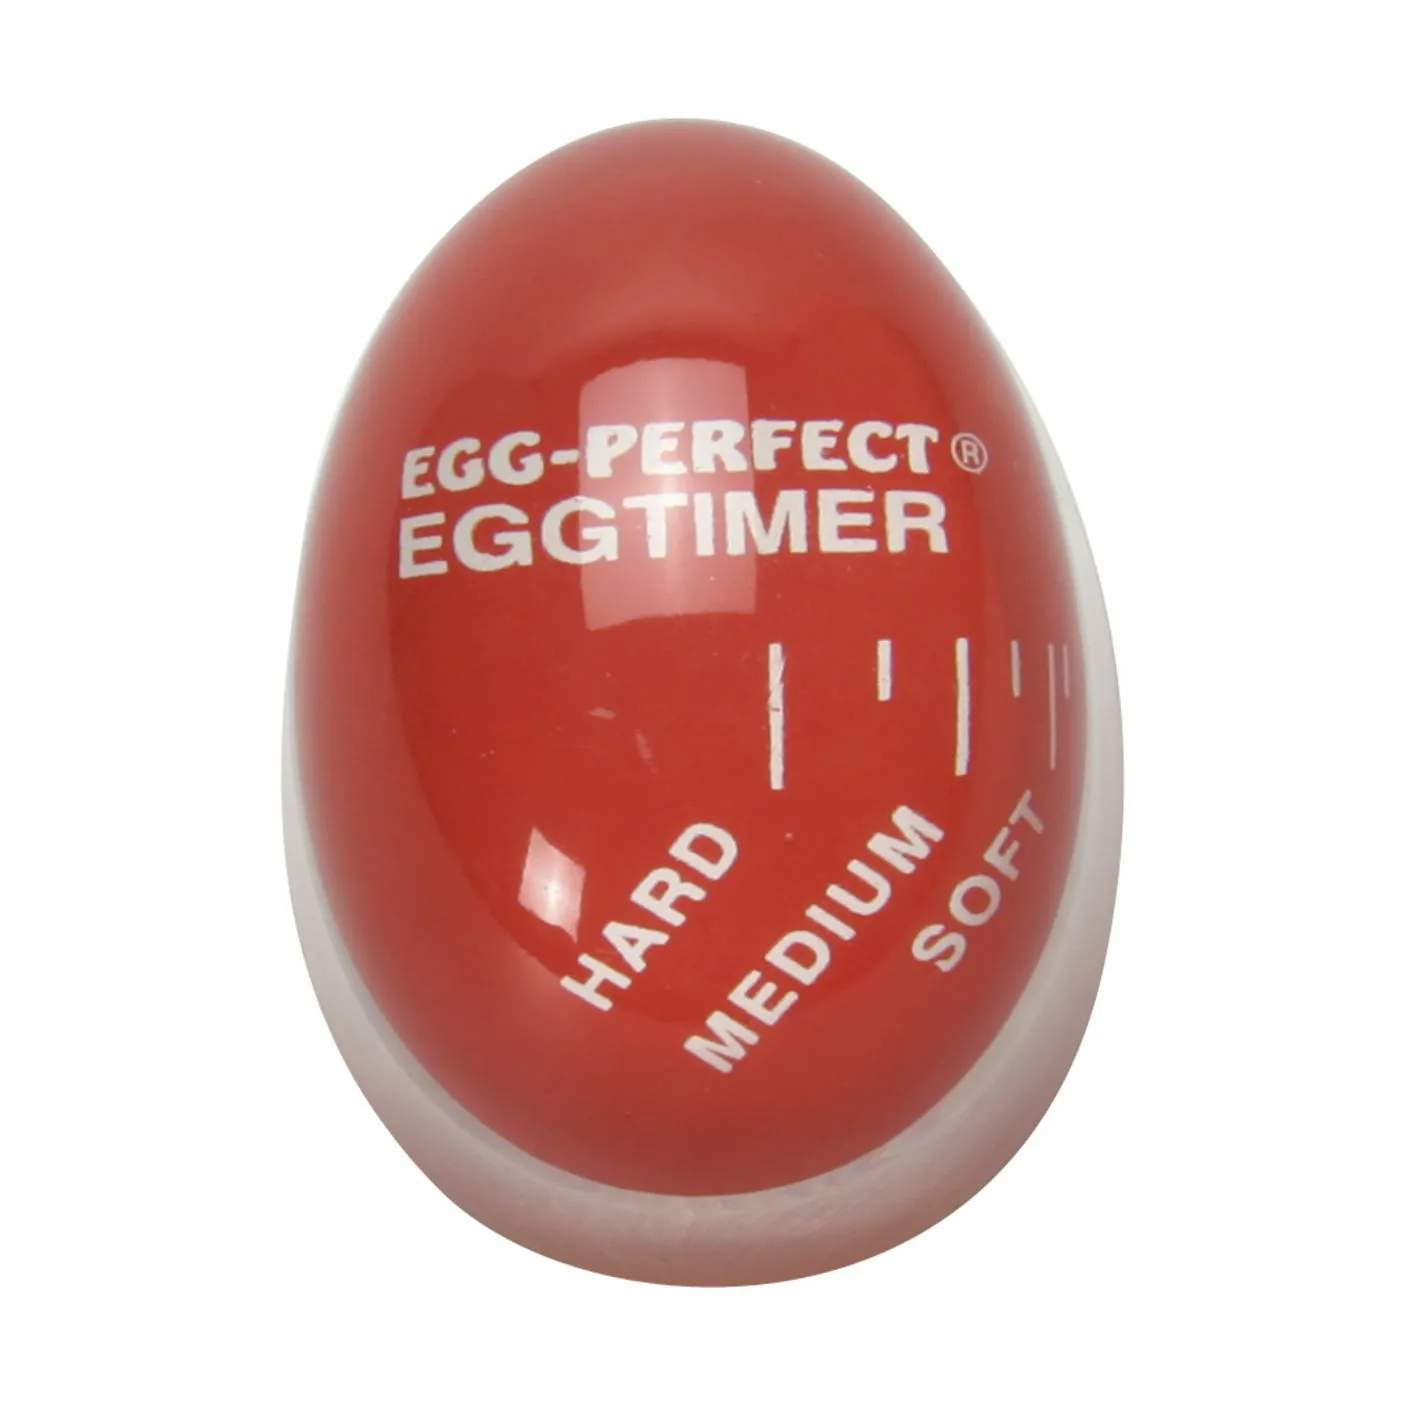 EggPerfect Æggetimer